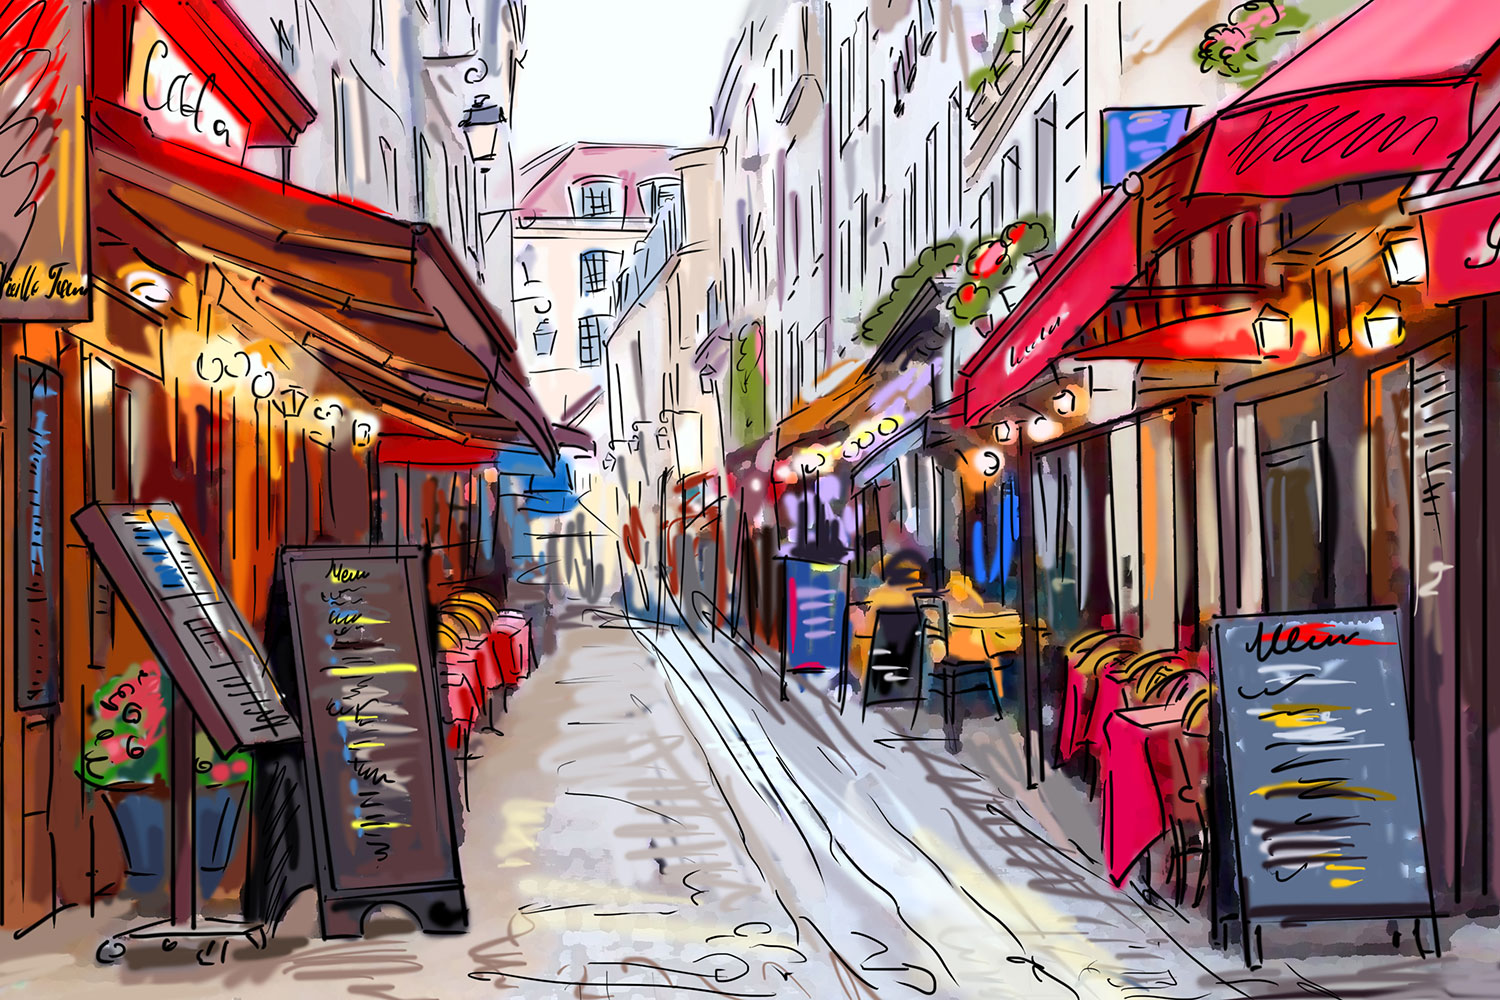 Cafe Alley - Paris Street Cartoon - 1500x1000 Wallpaper 